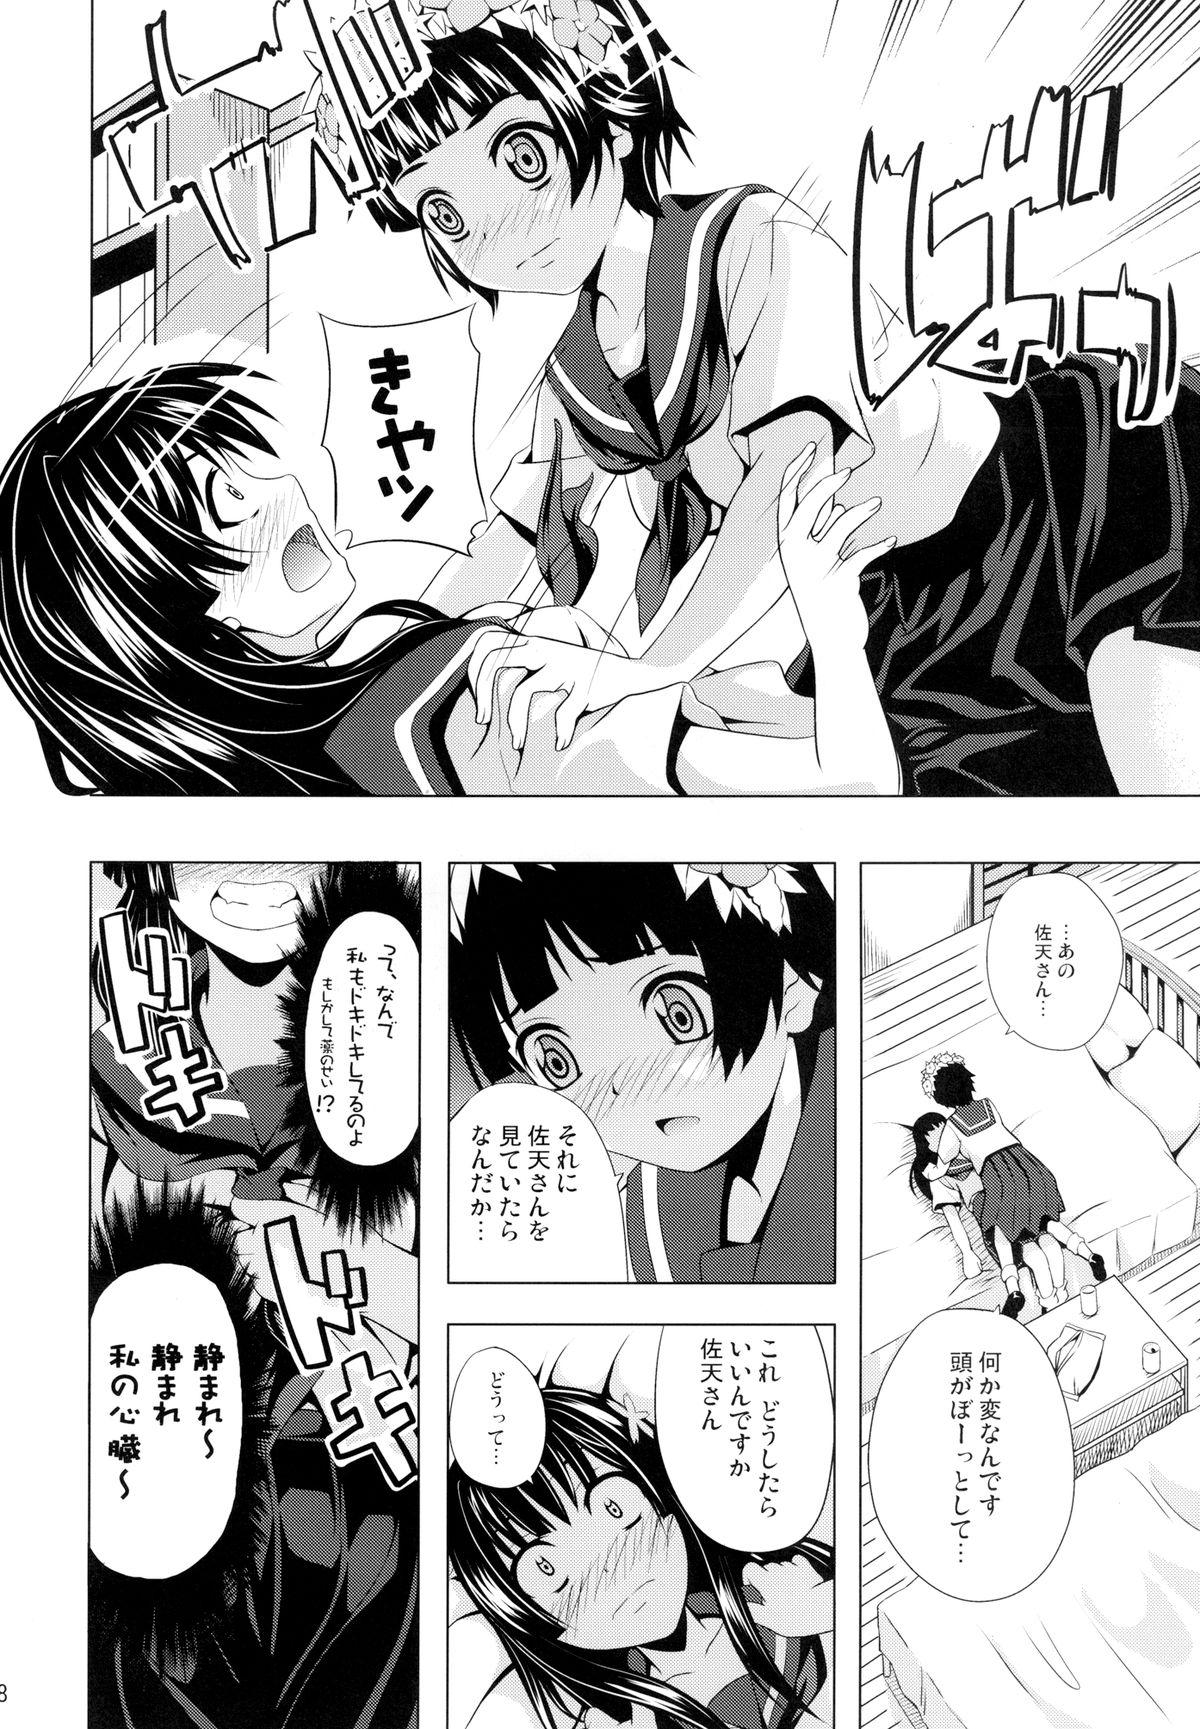 Loira Uiharu no U Saten no Sa - Toaru kagaku no railgun Students - Page 8